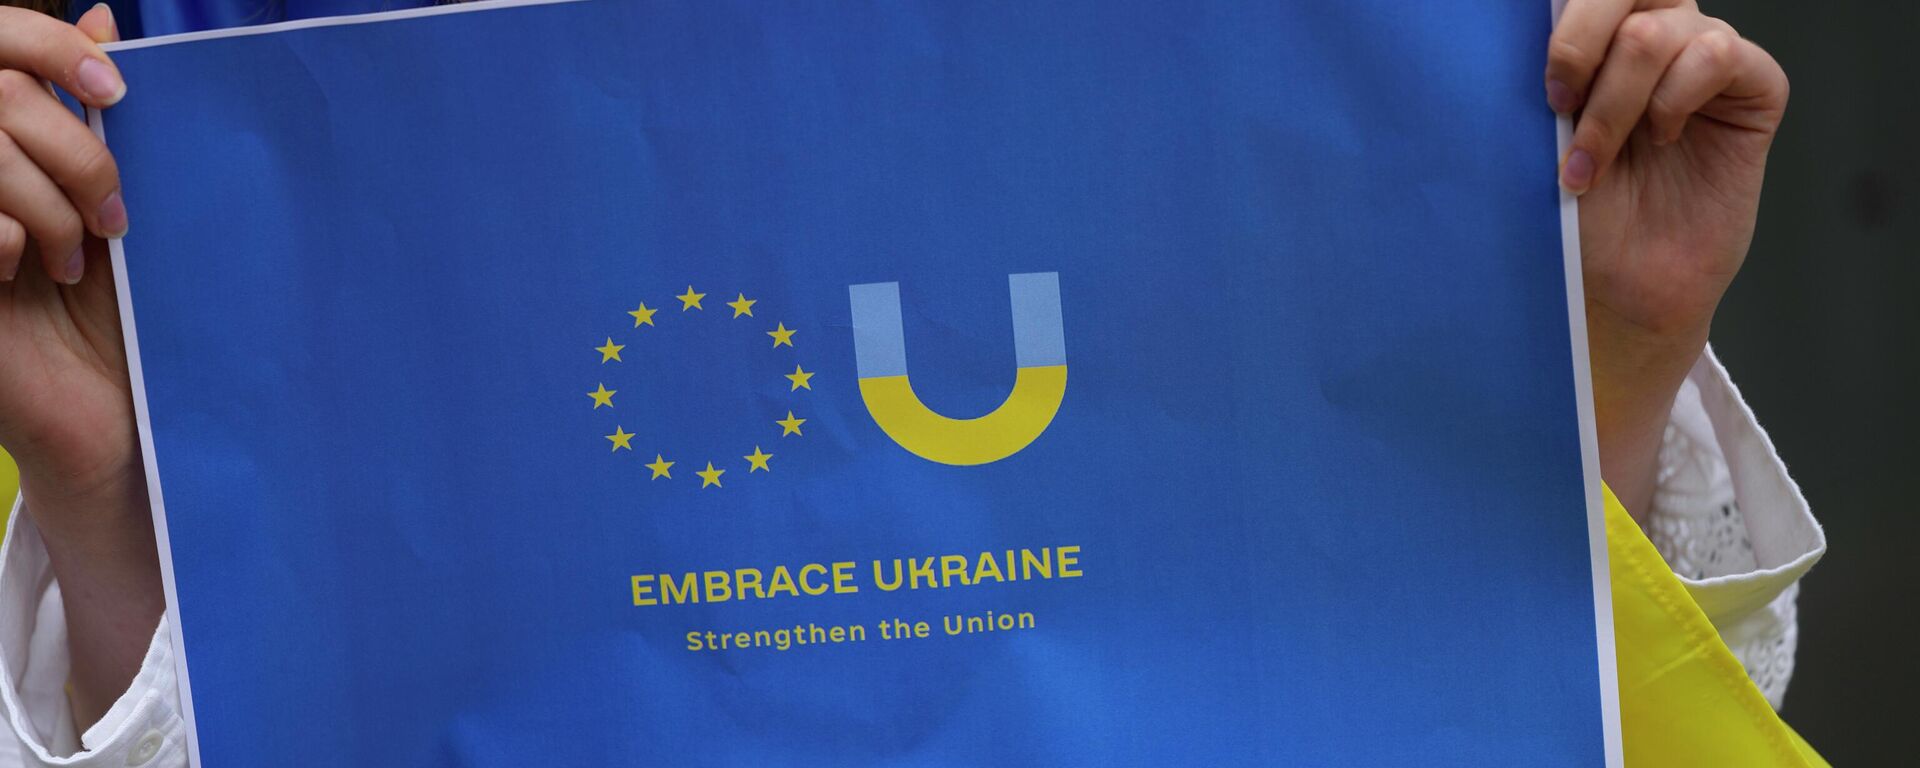 Чланови украјинске заједнице у Португалији на митингу подршке уласку Украјине у ЕУ испред амбасаде Холандије у Лисабону - Sputnik Србија, 1920, 19.06.2022